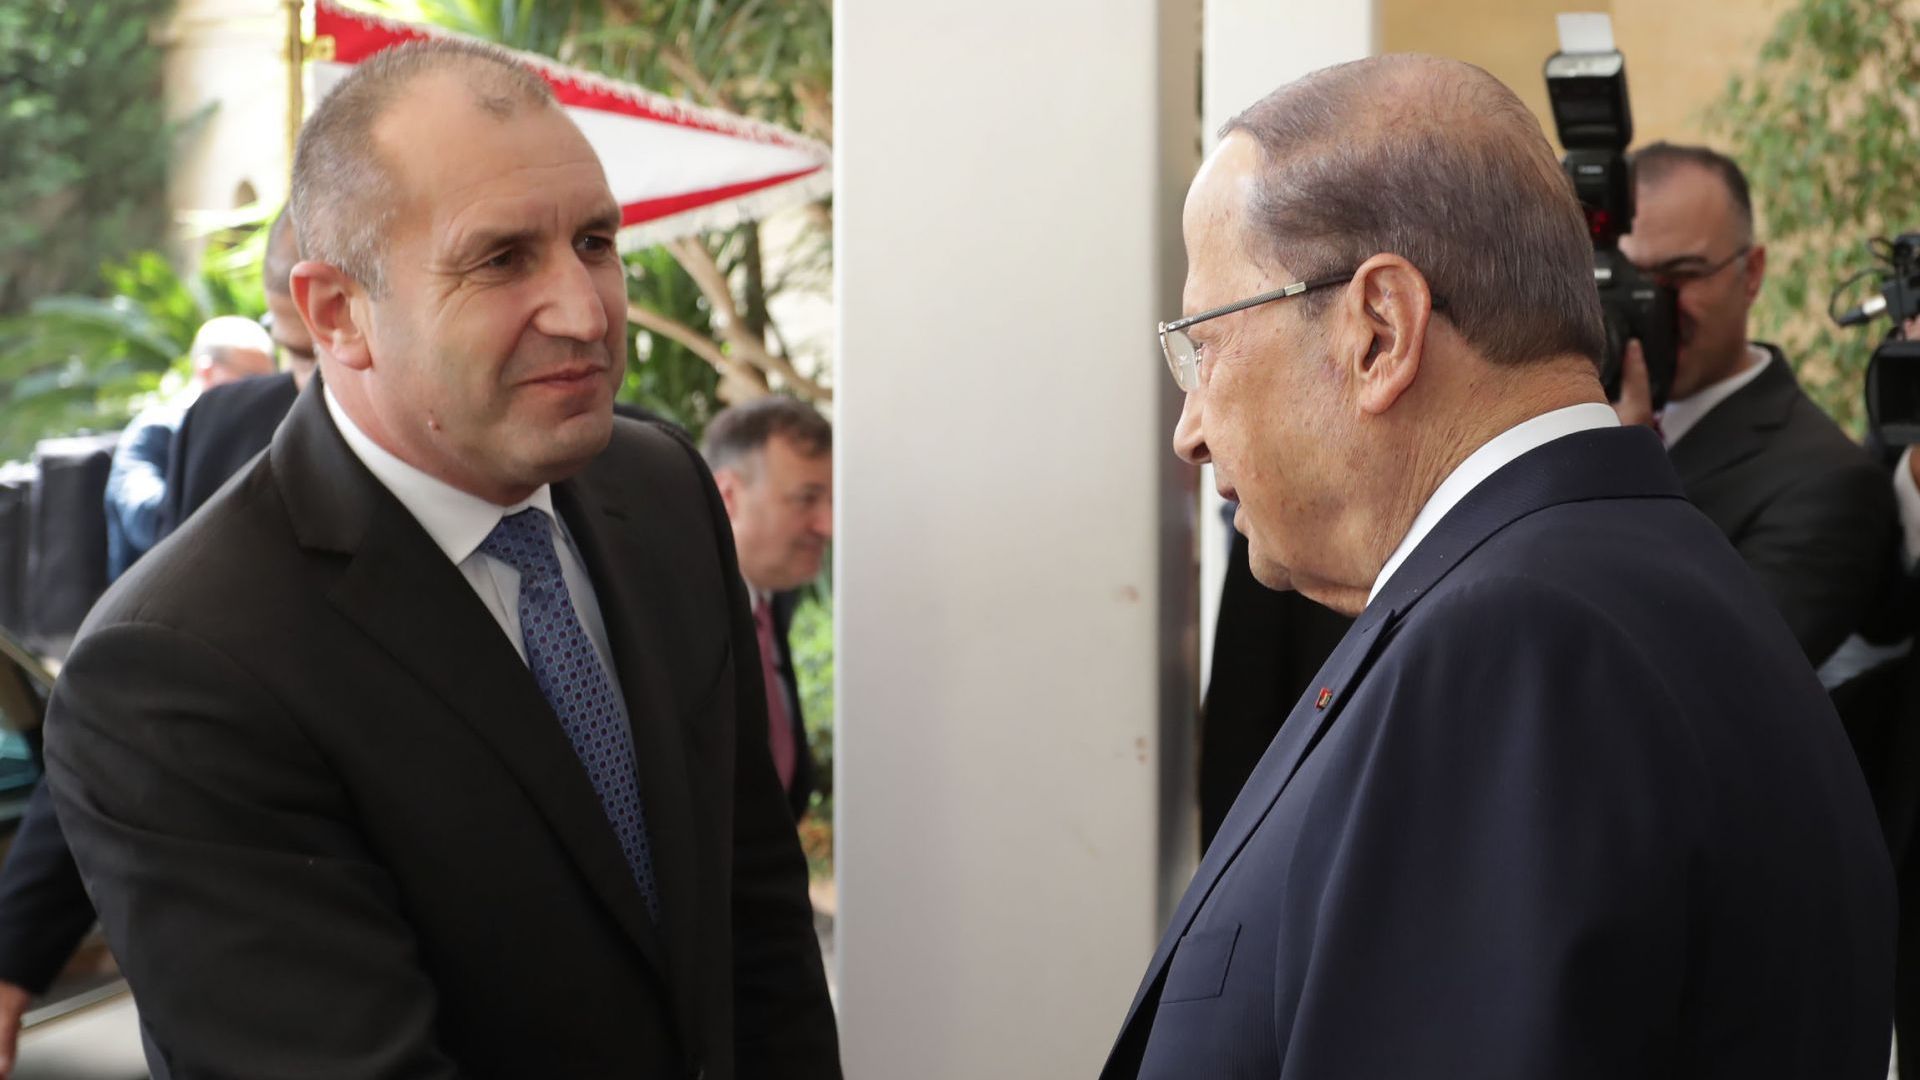 България високо цени и подкрепя усилията на Ливан за внасяне